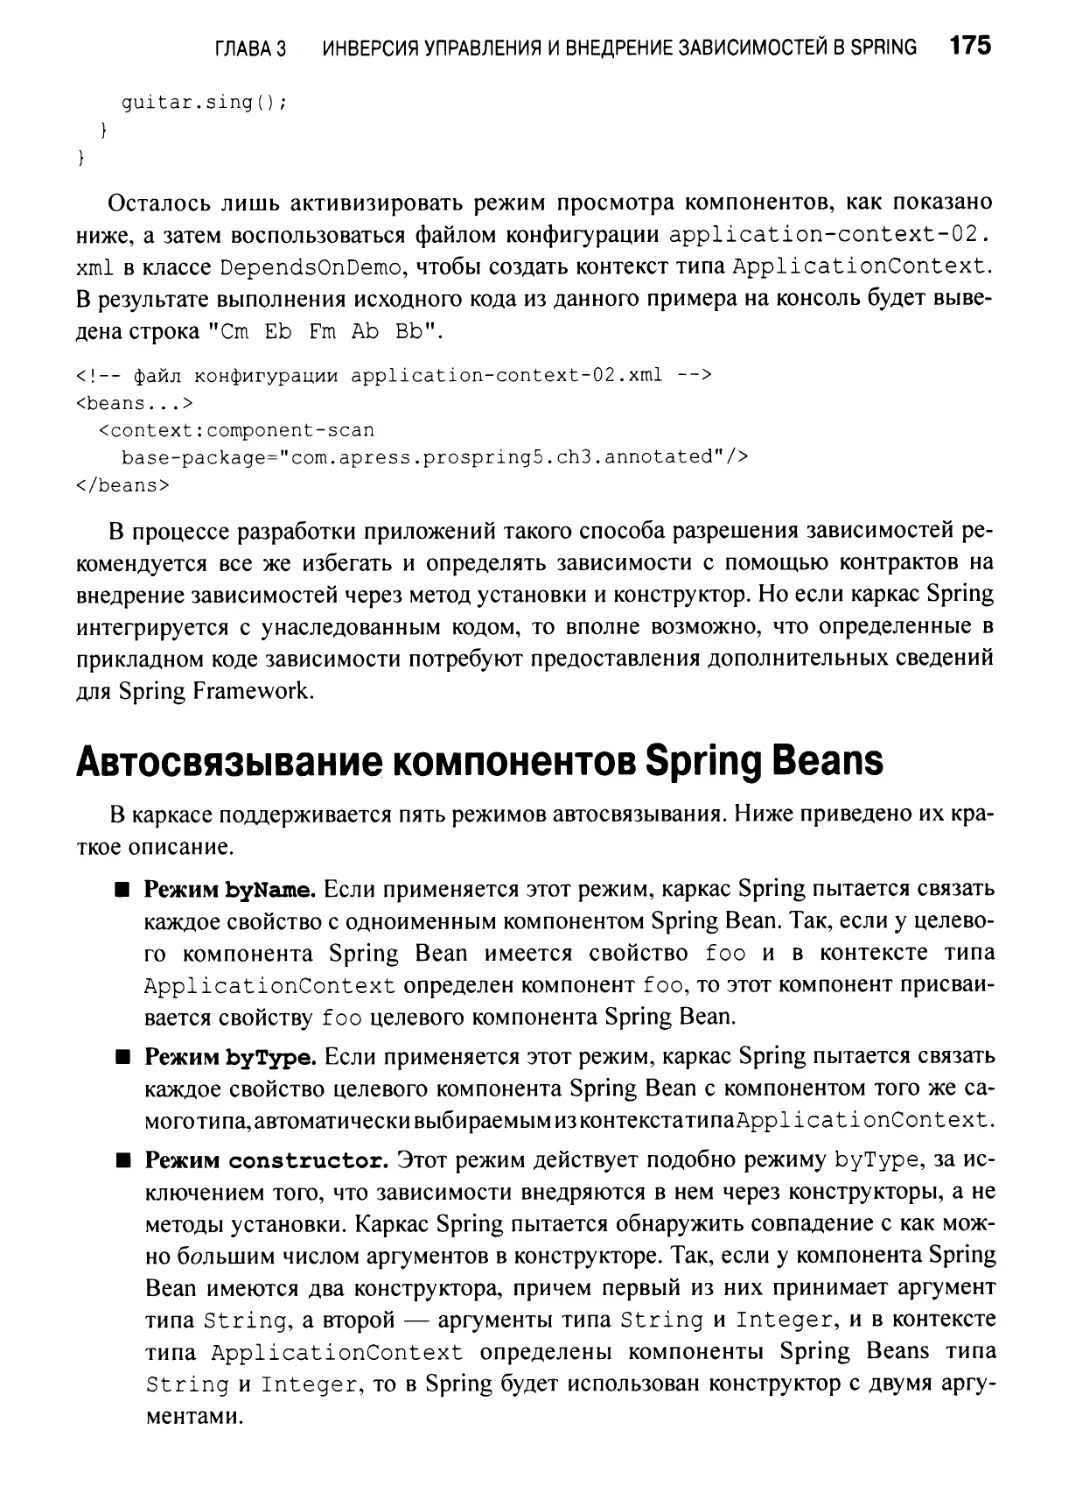 Автосвязывание компонентов Spring Beans